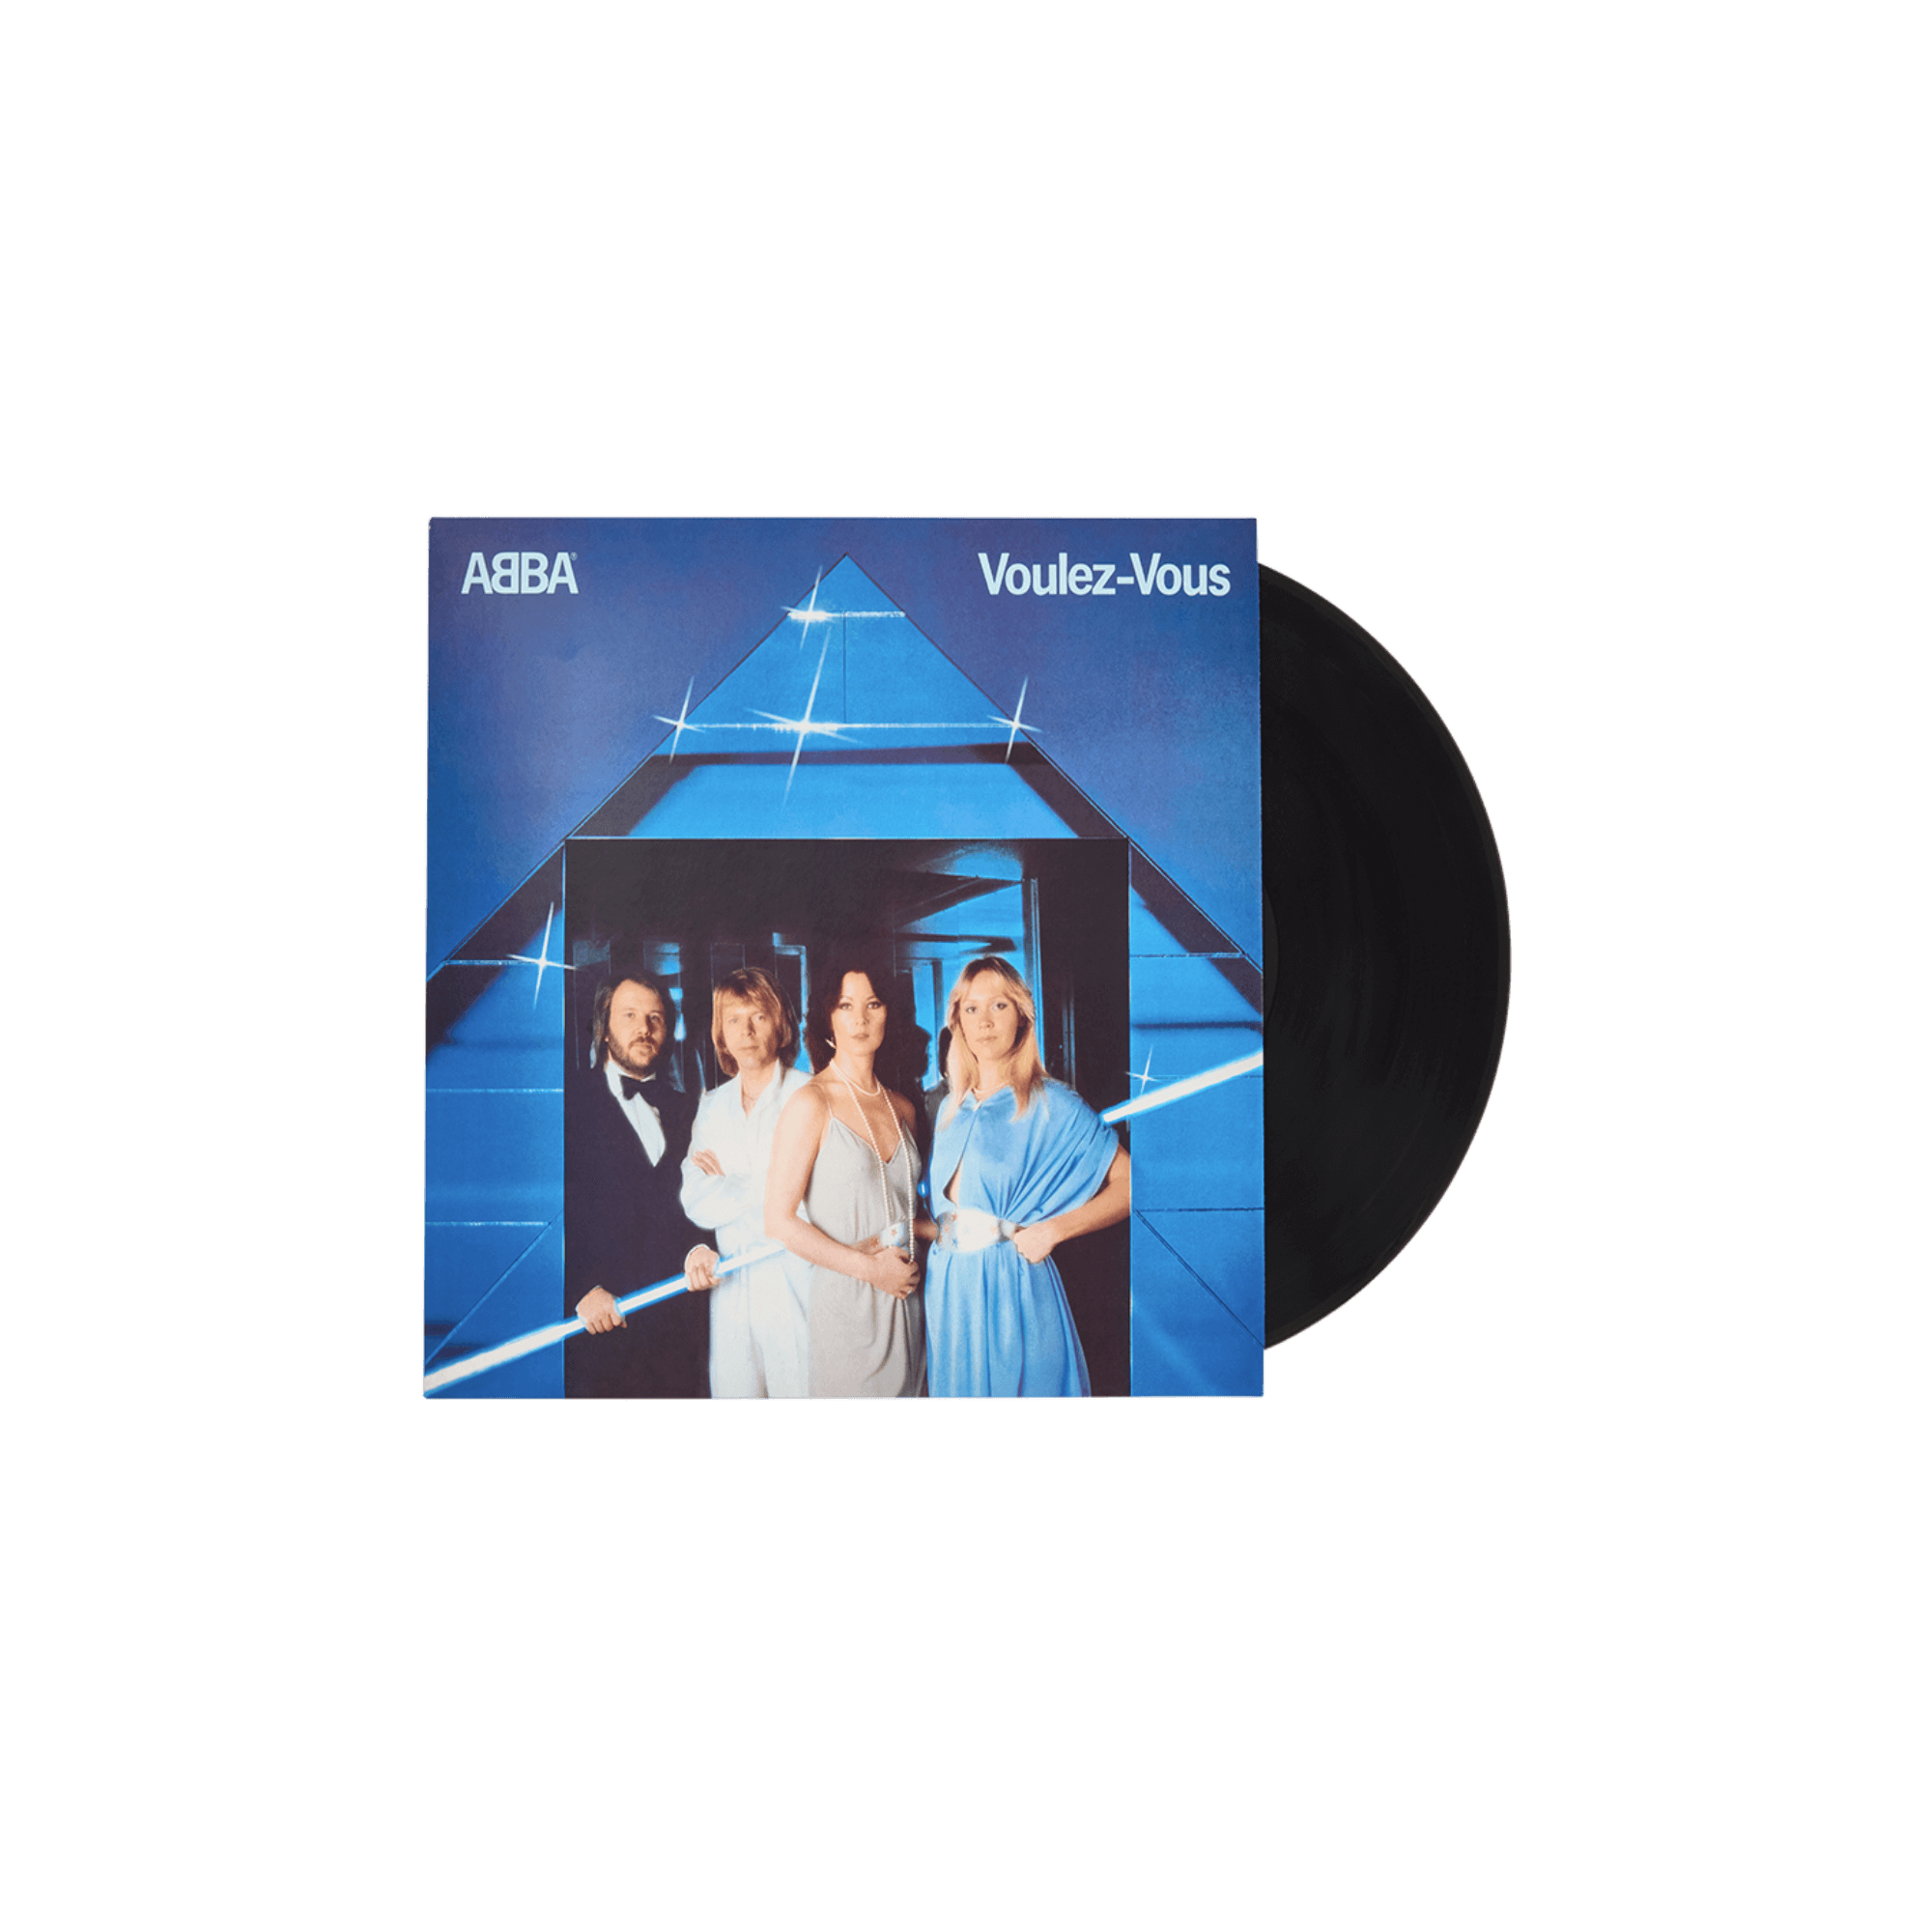 ABBA Voulez-Vous vinyl